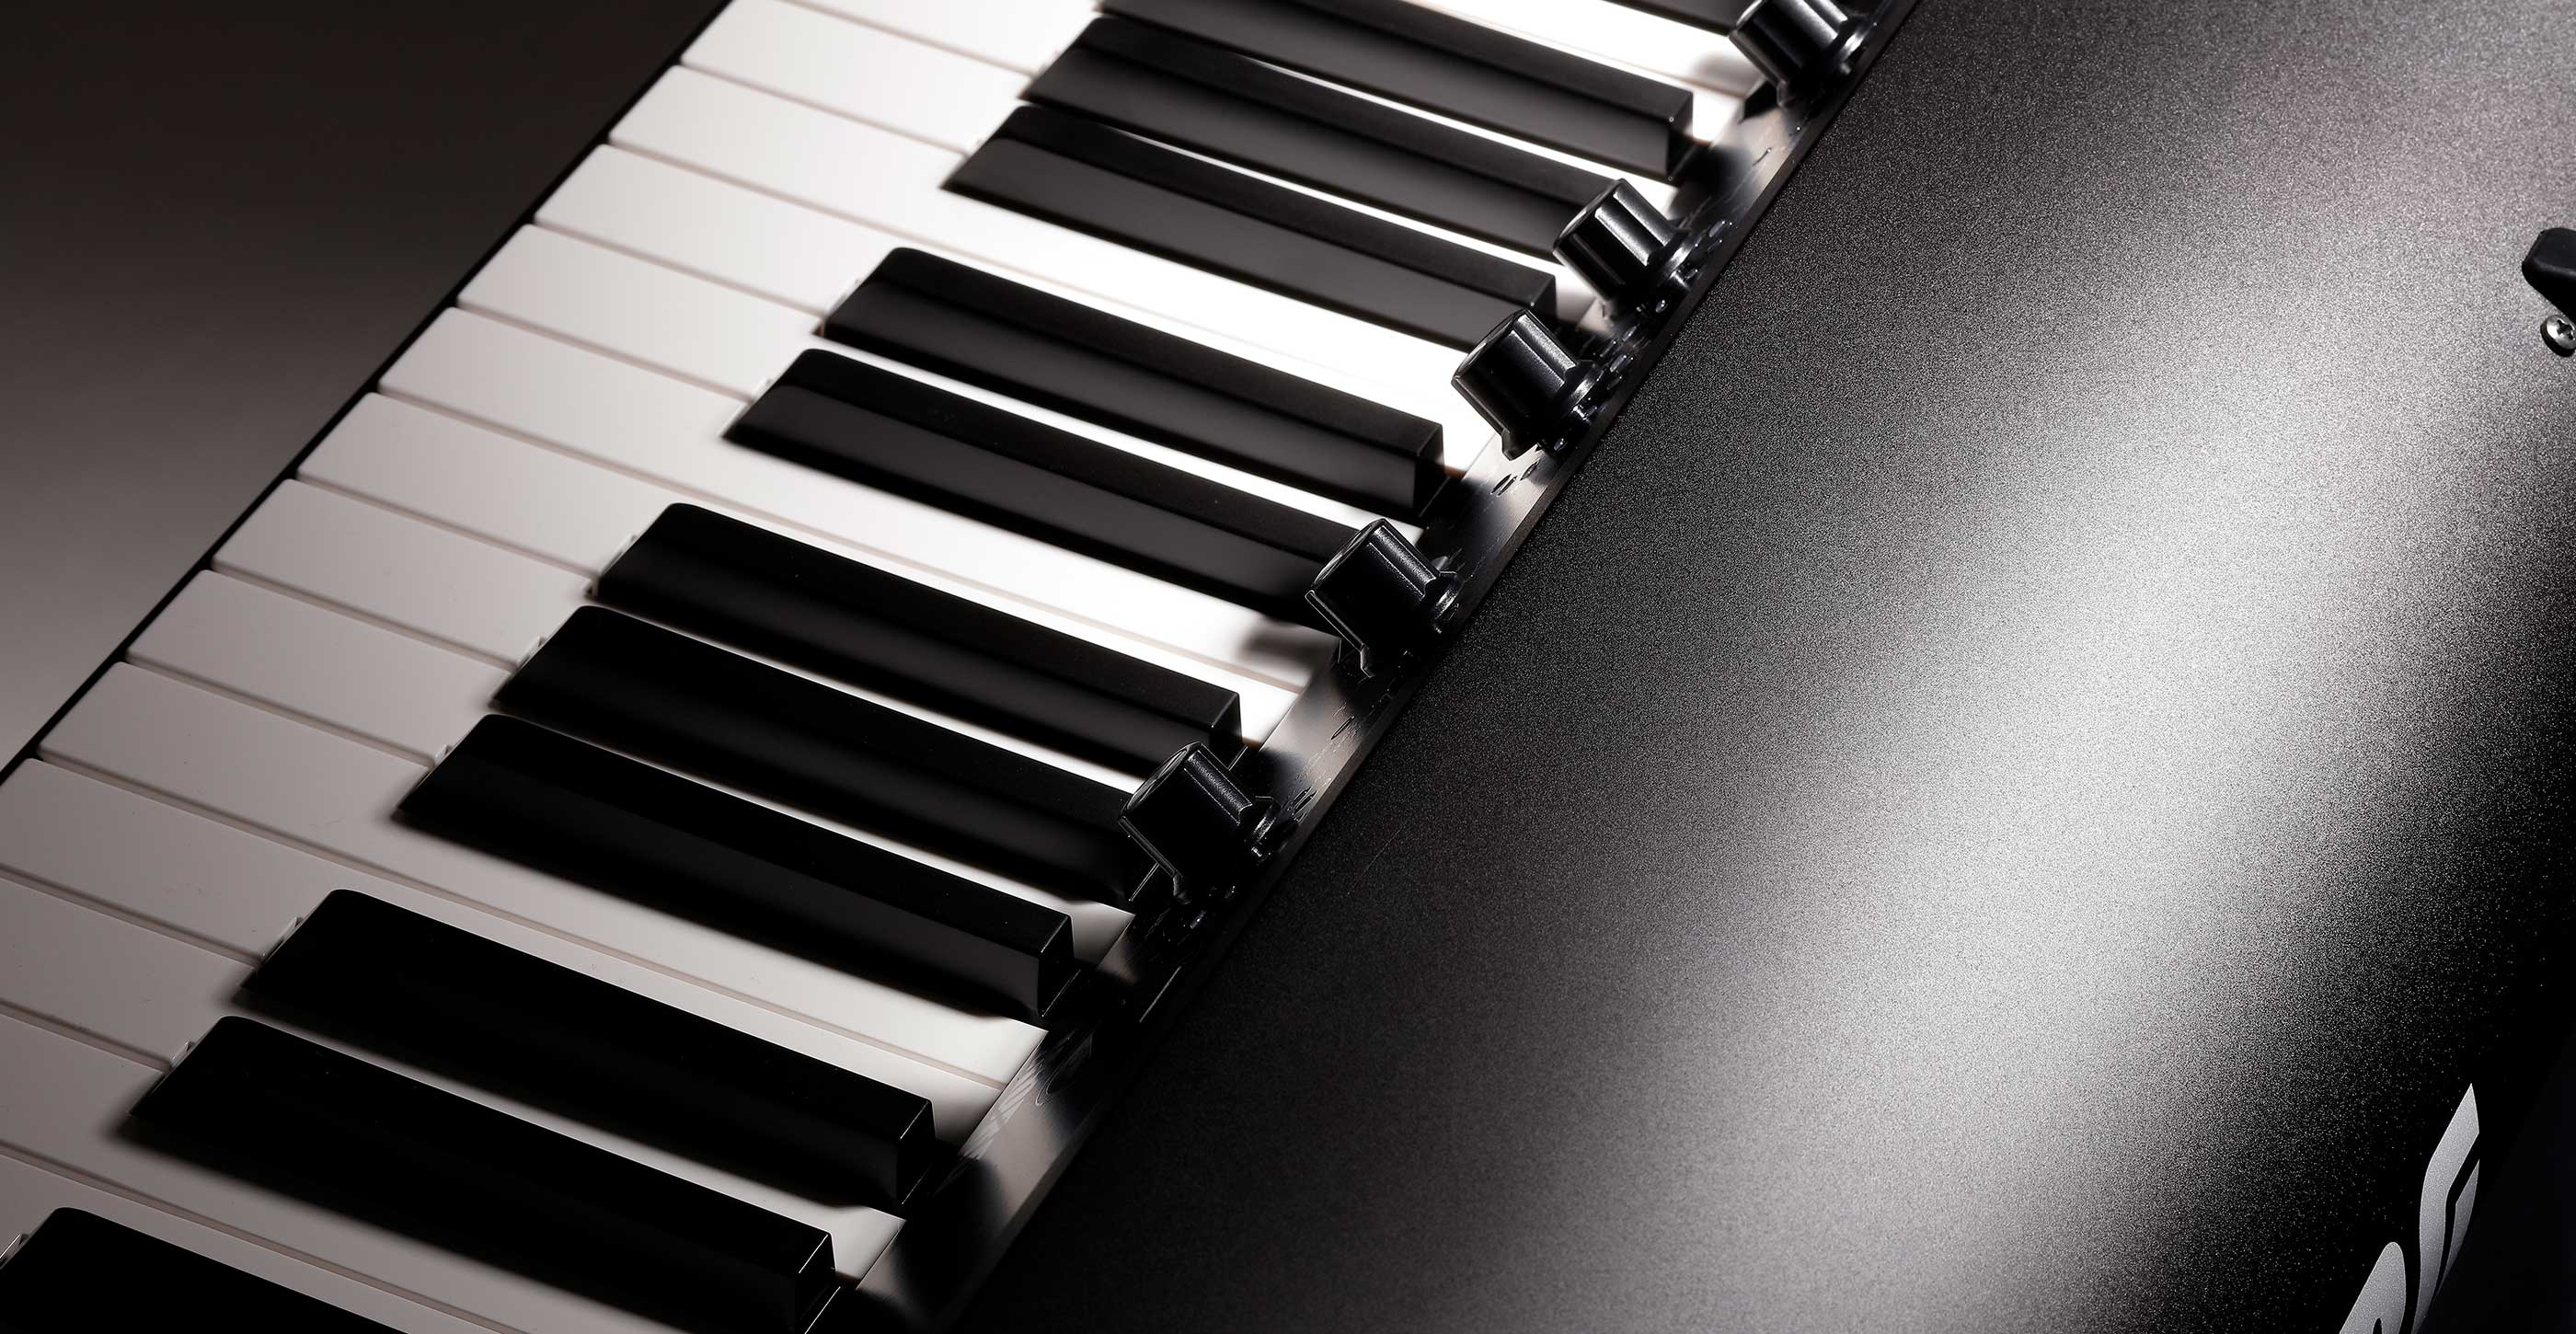 Korg Digital Pianos